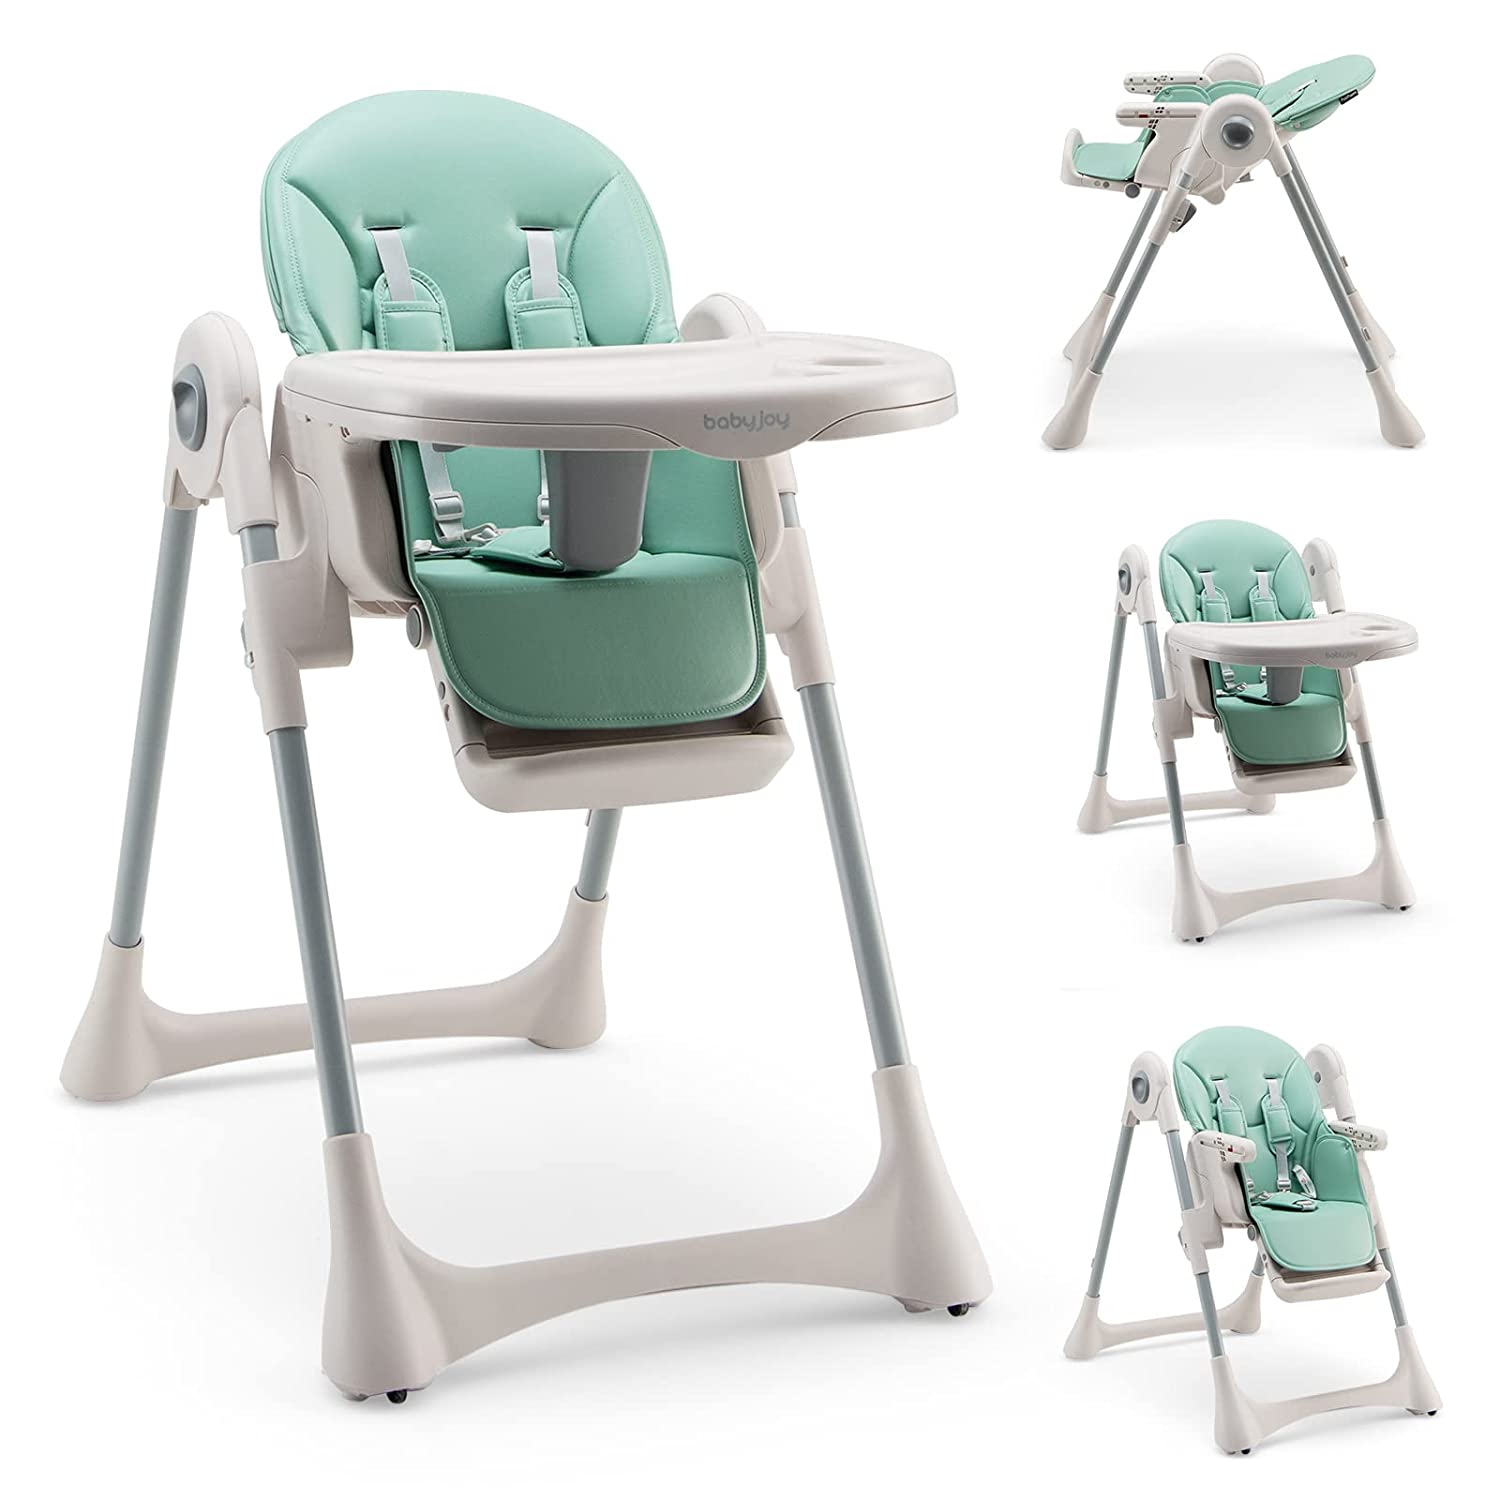 стульчик для кормления pali smart maison bebe baby party Детский стульчик-трансформер для кормления Baby Joy, зеленый